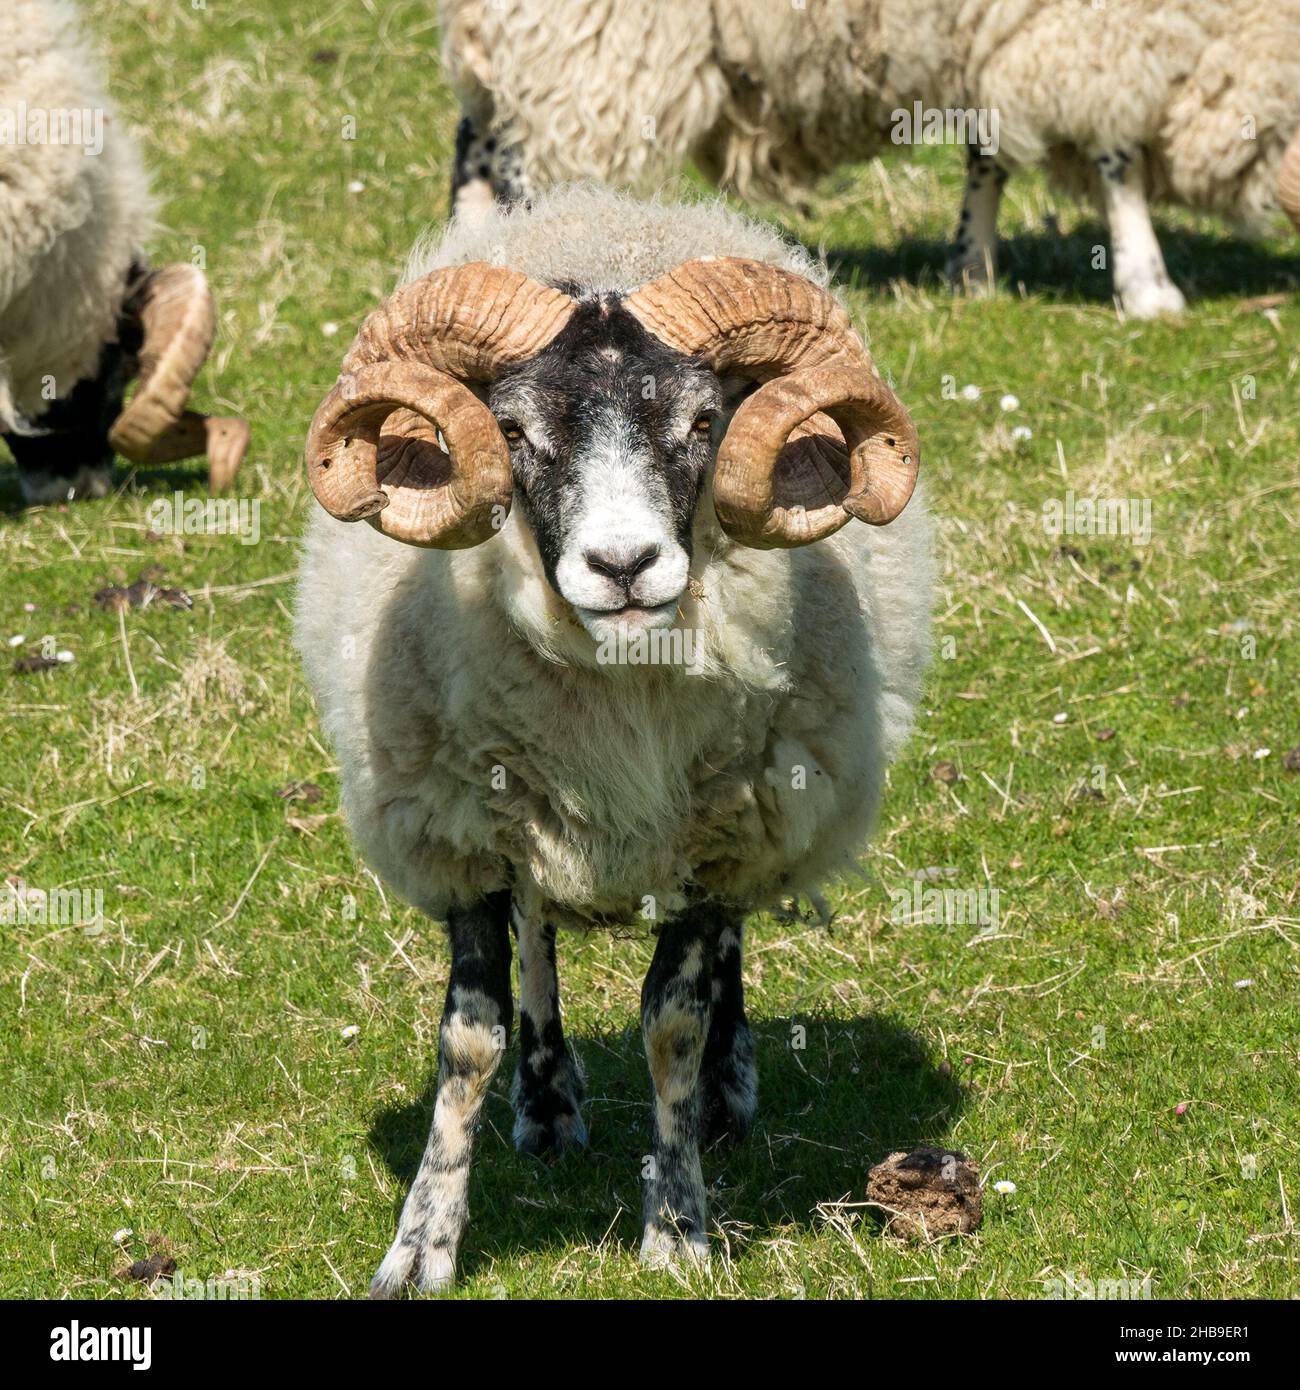 Blackface Schafe mit großen lockigen Hörnern stehen in grün grasbewachsenen Feld auf der Isle of Lewis, Schottland, Großbritannien Stockfoto